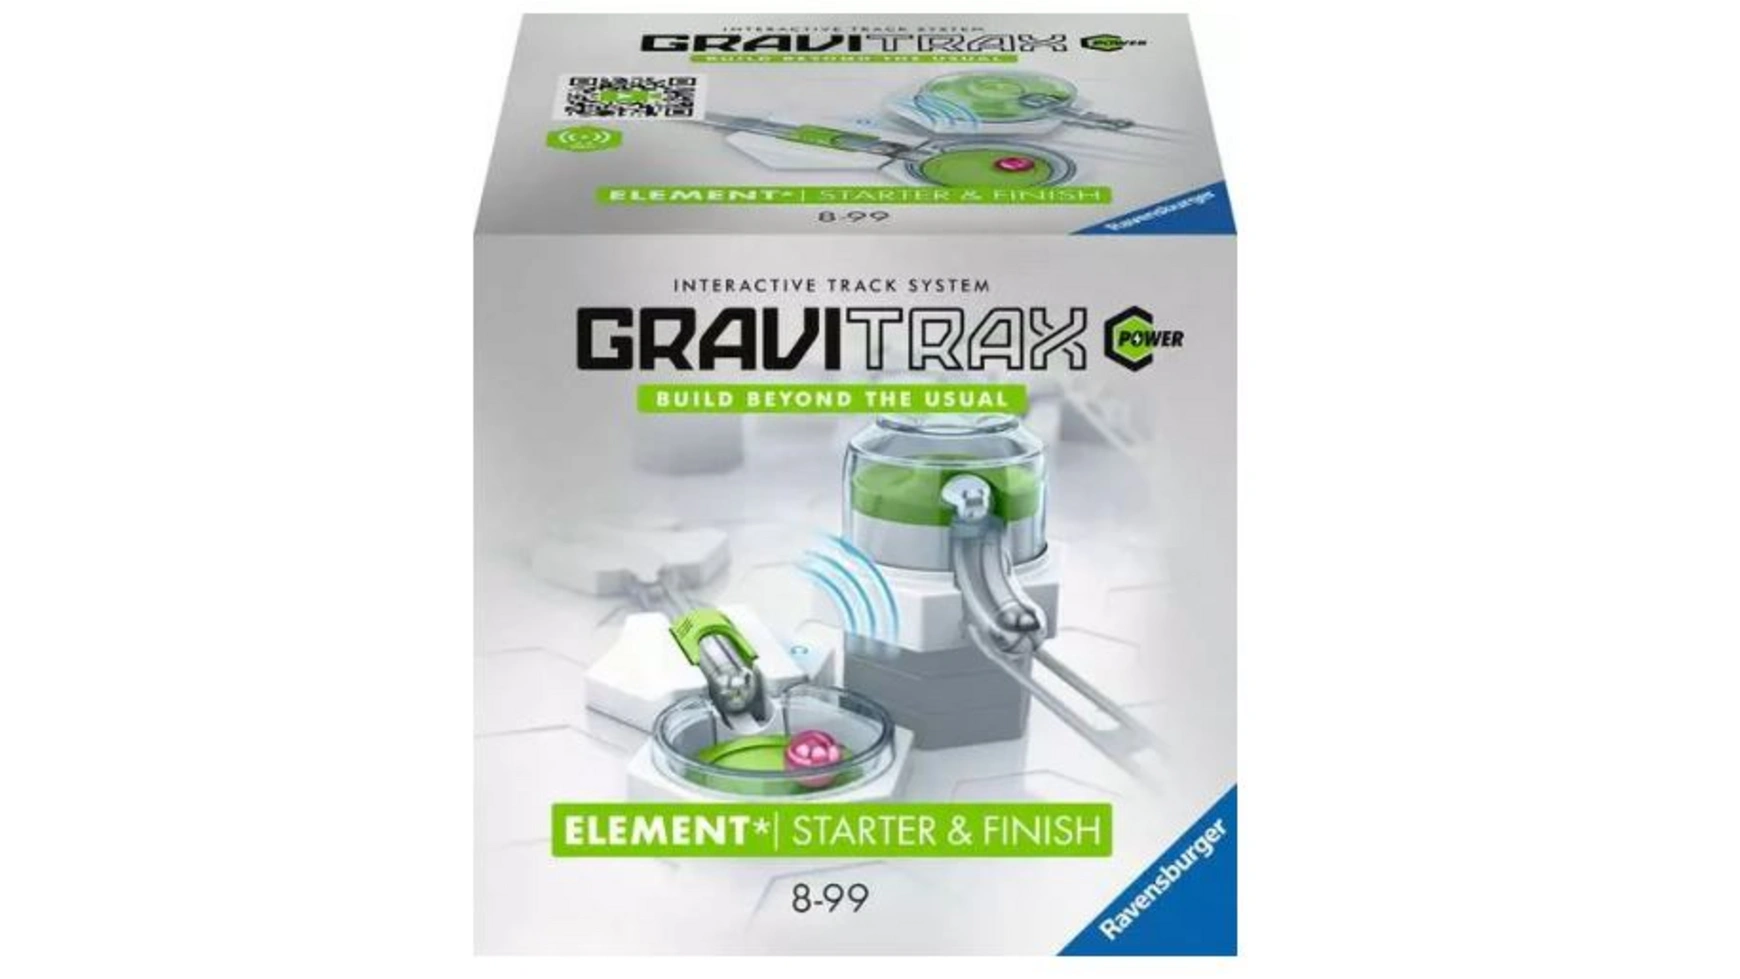 Gravitrax power element starter & finish расширение marble run Ravensburger Beschäftigung